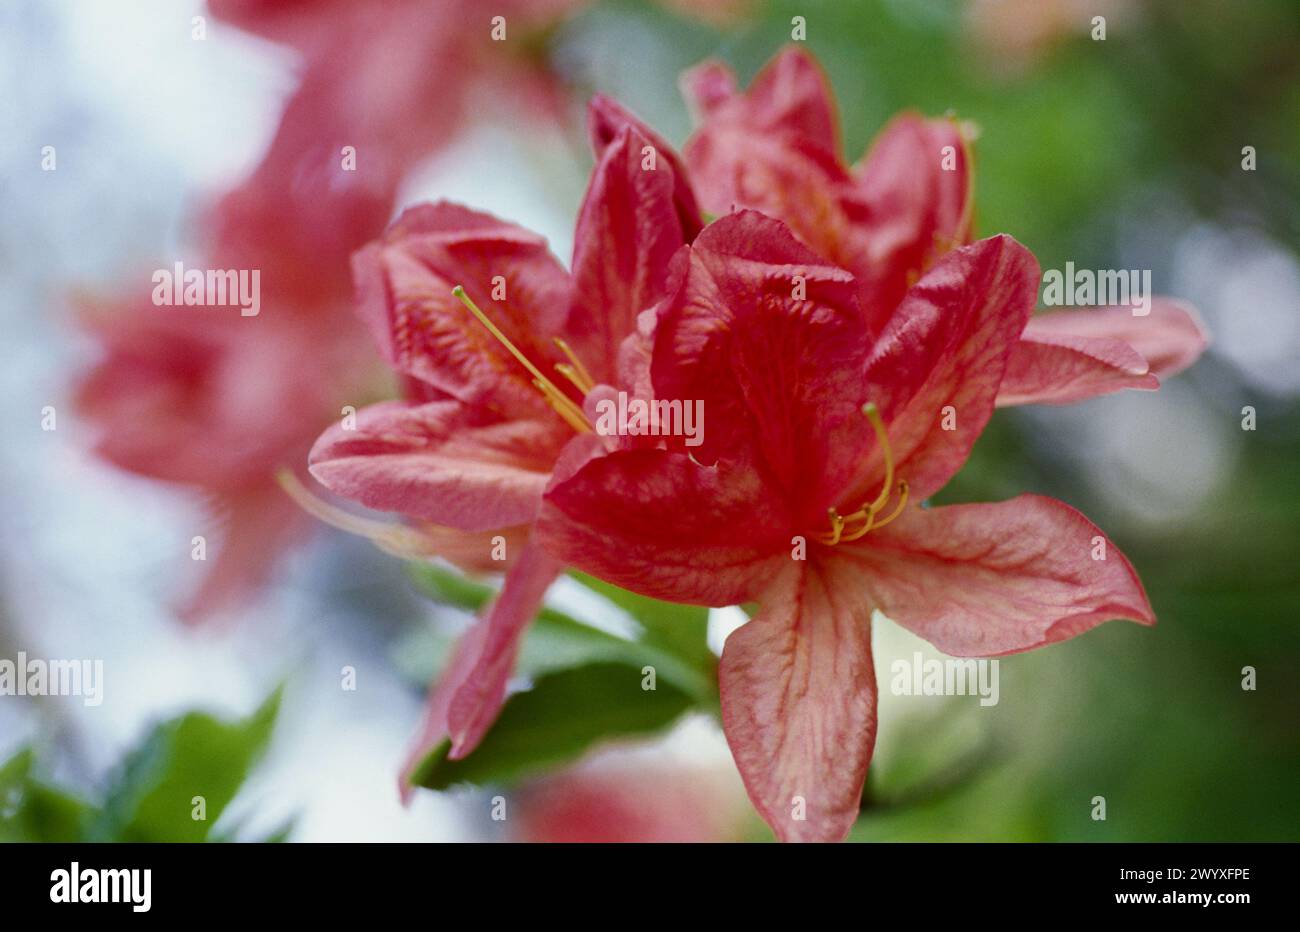 Rhododendron (Azalea mollis). Stock Photo